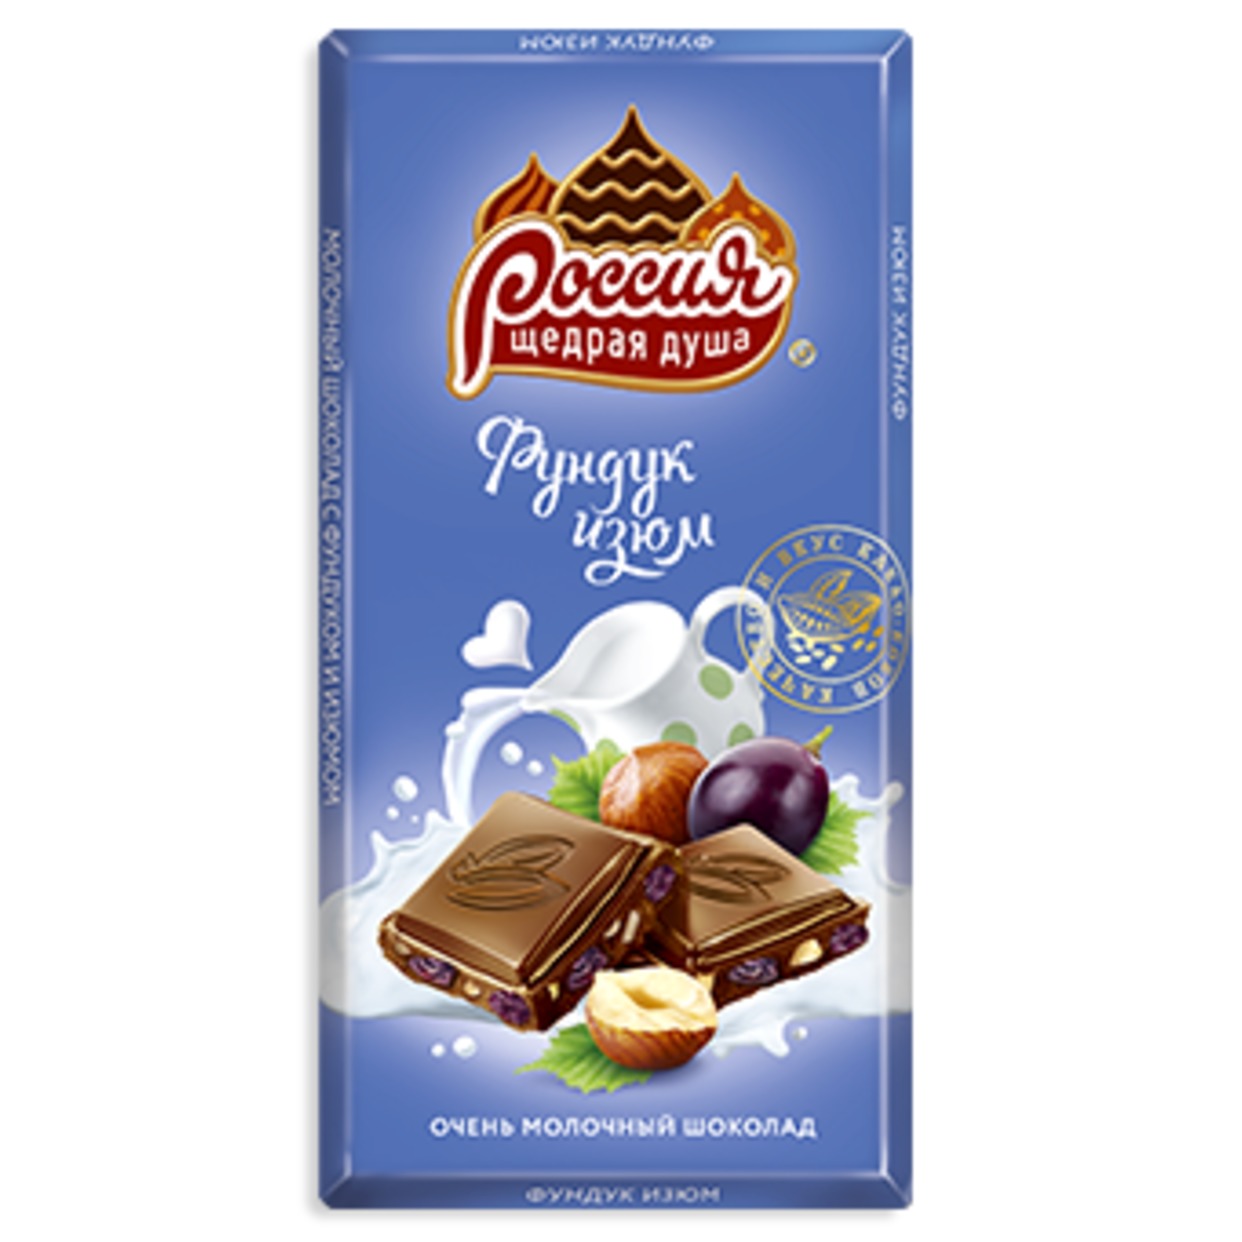 Шоколад Россия - щедрая душа Молочный Фундук изюм 90г по акции в Пятерочке